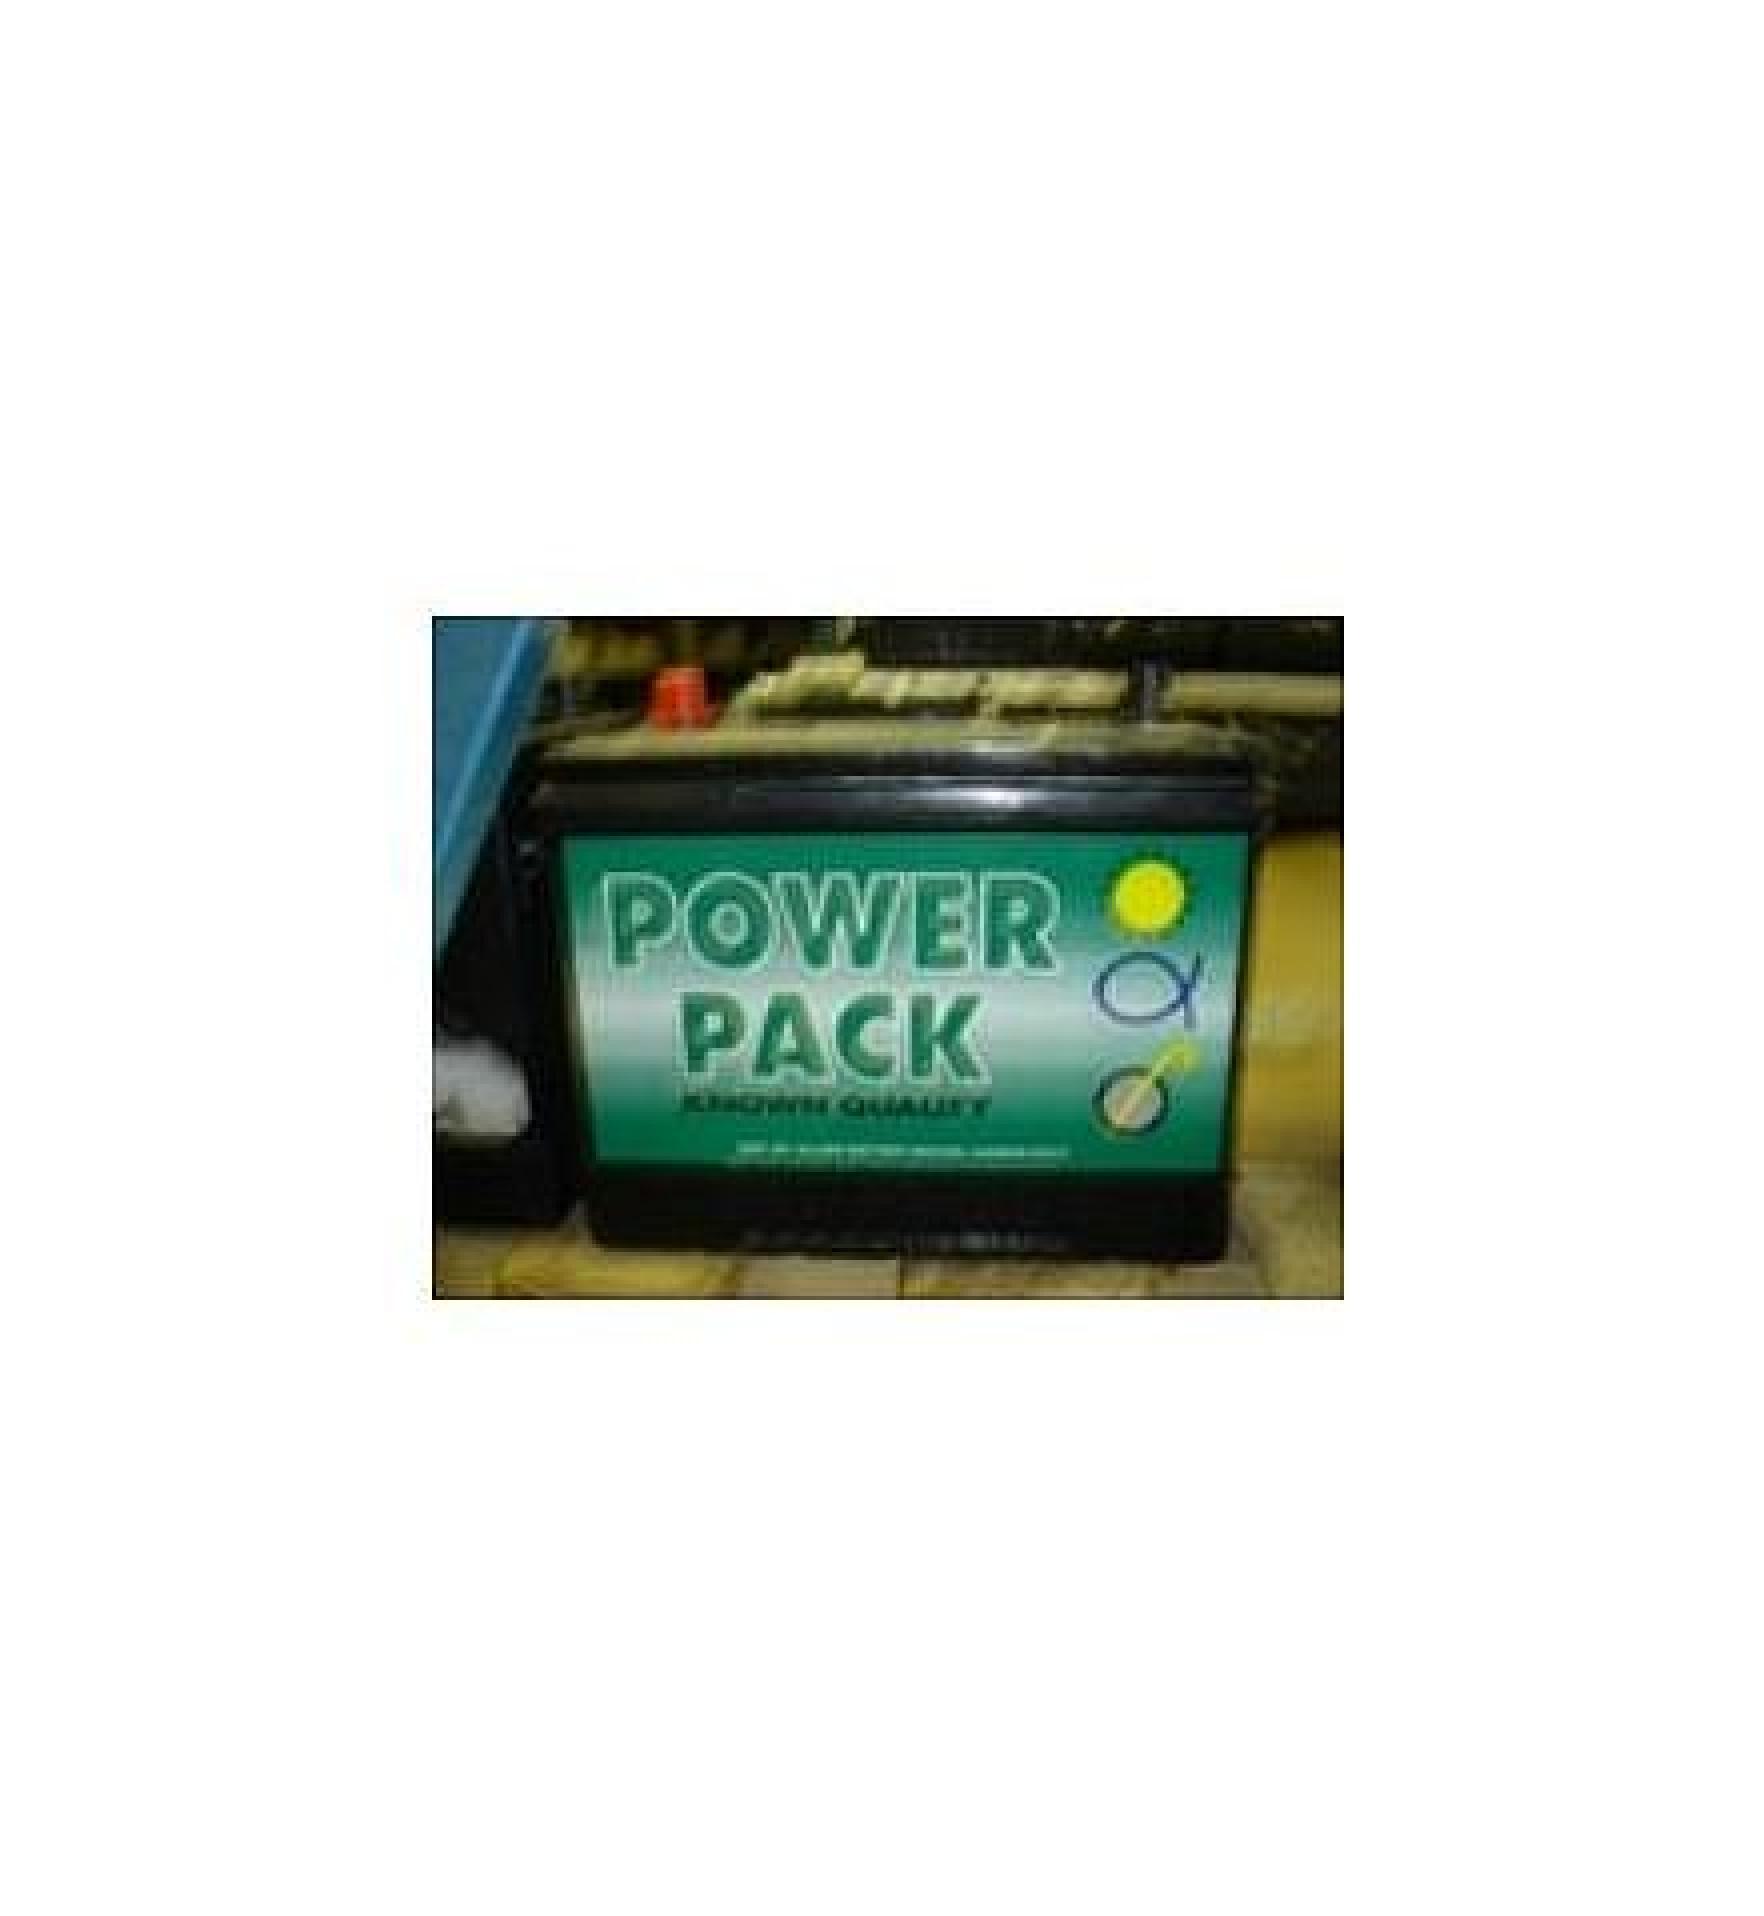 Trademark Logo POWER PACK